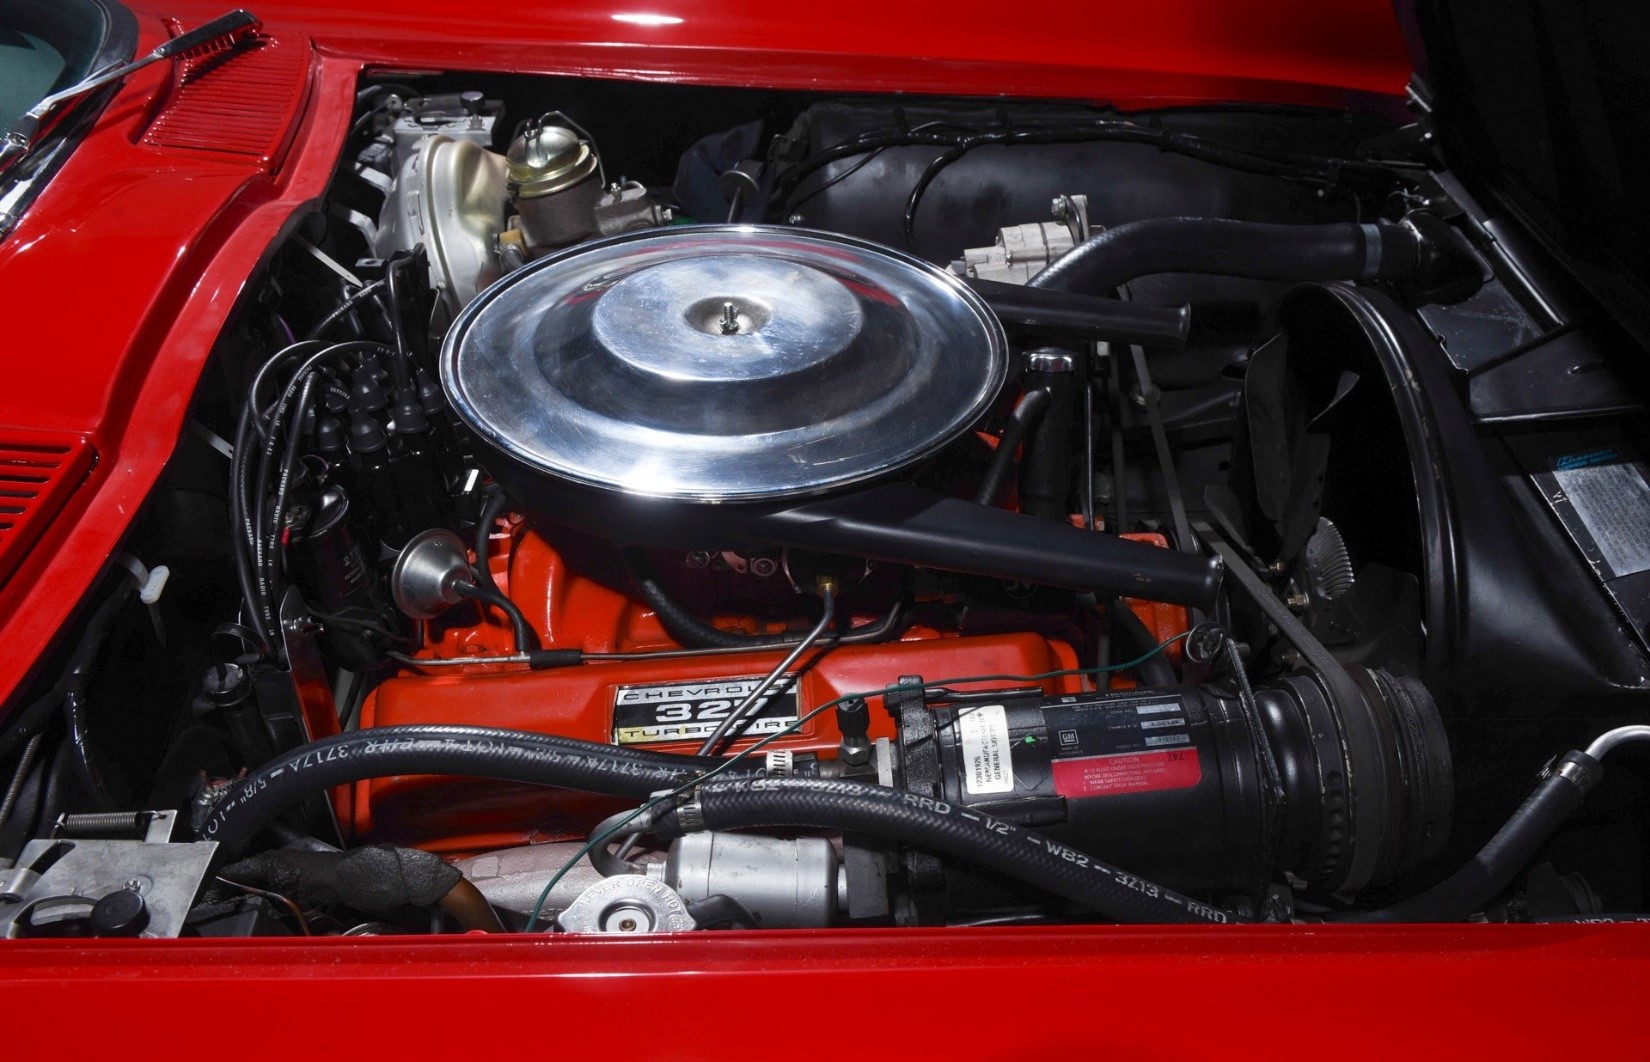 427Stingray.com to offer 1964 Chevrolet Corvette Coupe